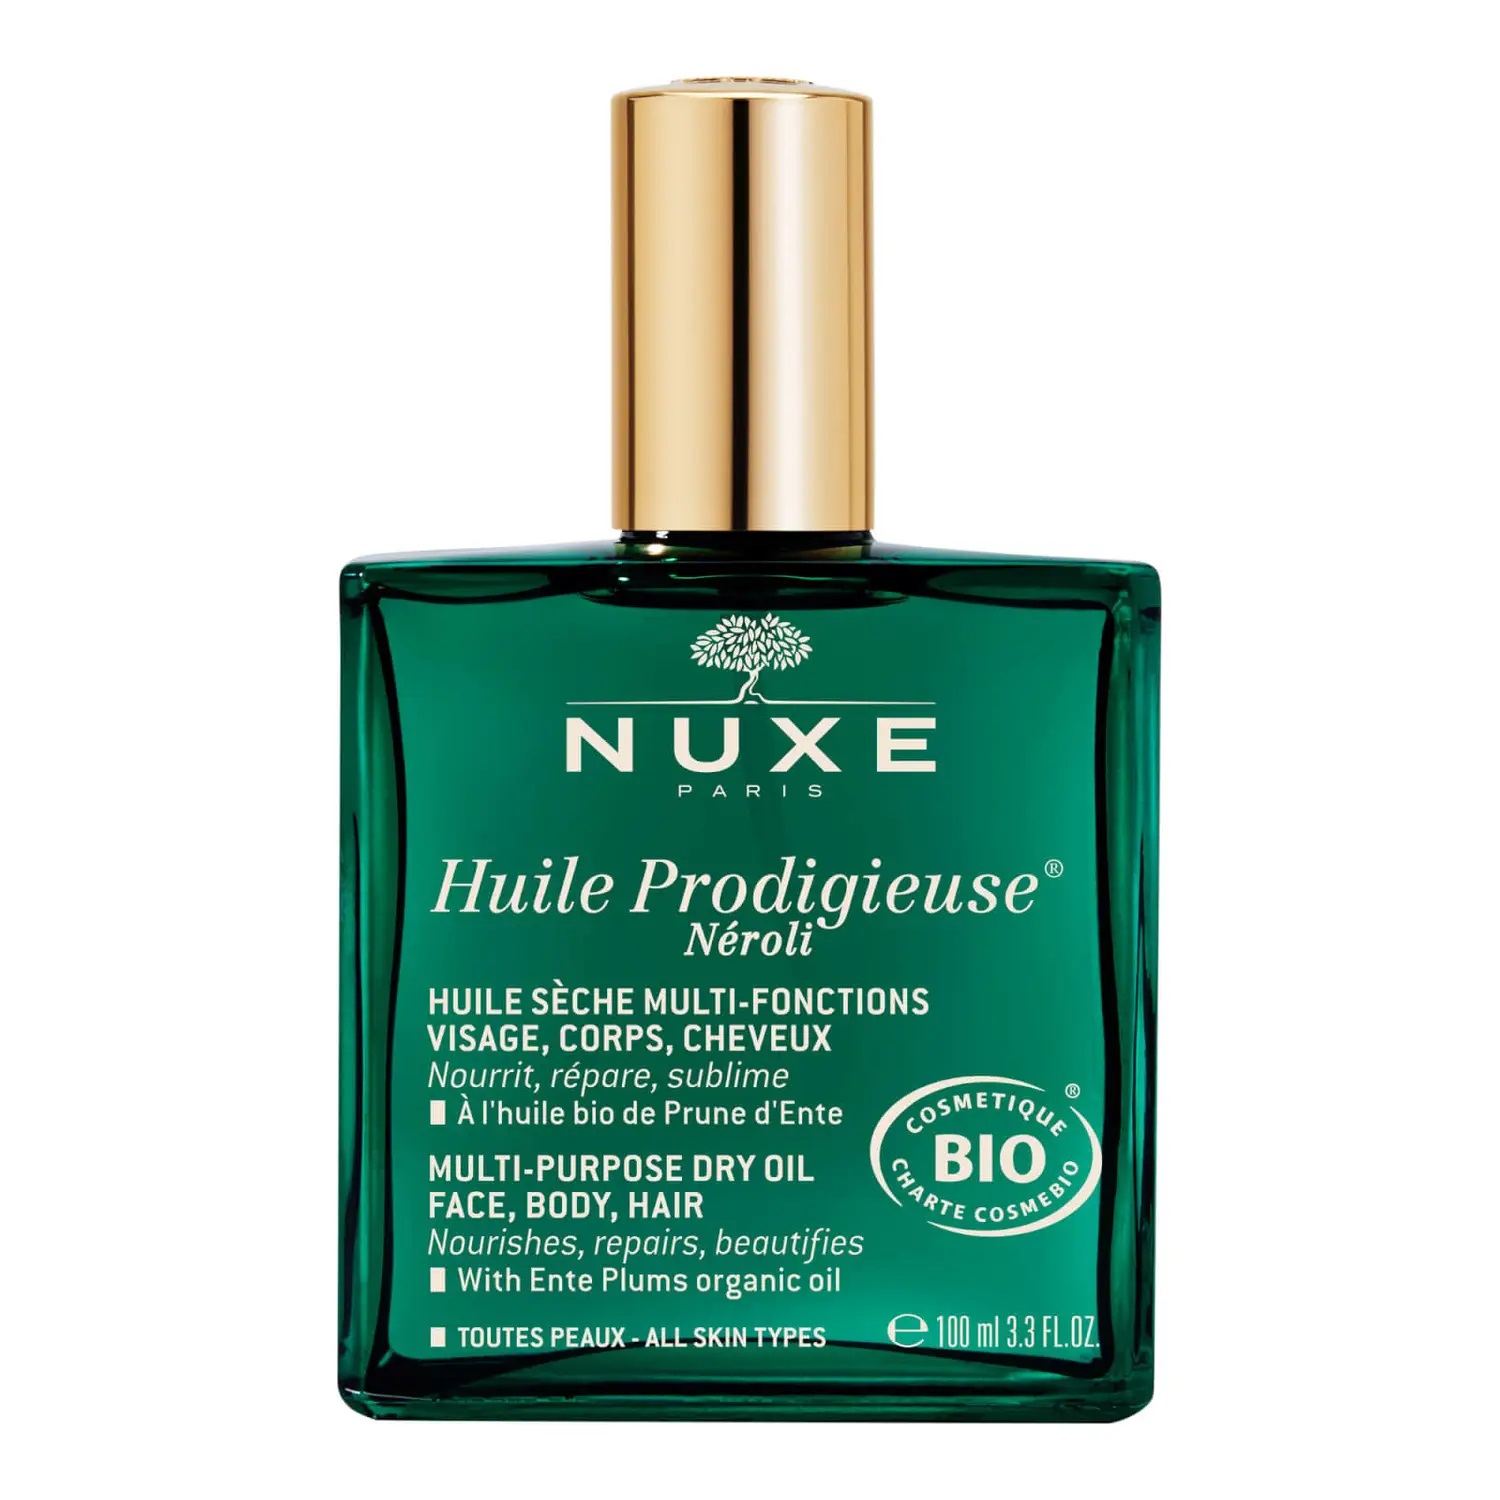 Nuxe Multifunkční suchý olej na obličej, tělo a vlasy Huile Prodigieuse Néroli (Multi-Purpose Dry Oil) 100 ml